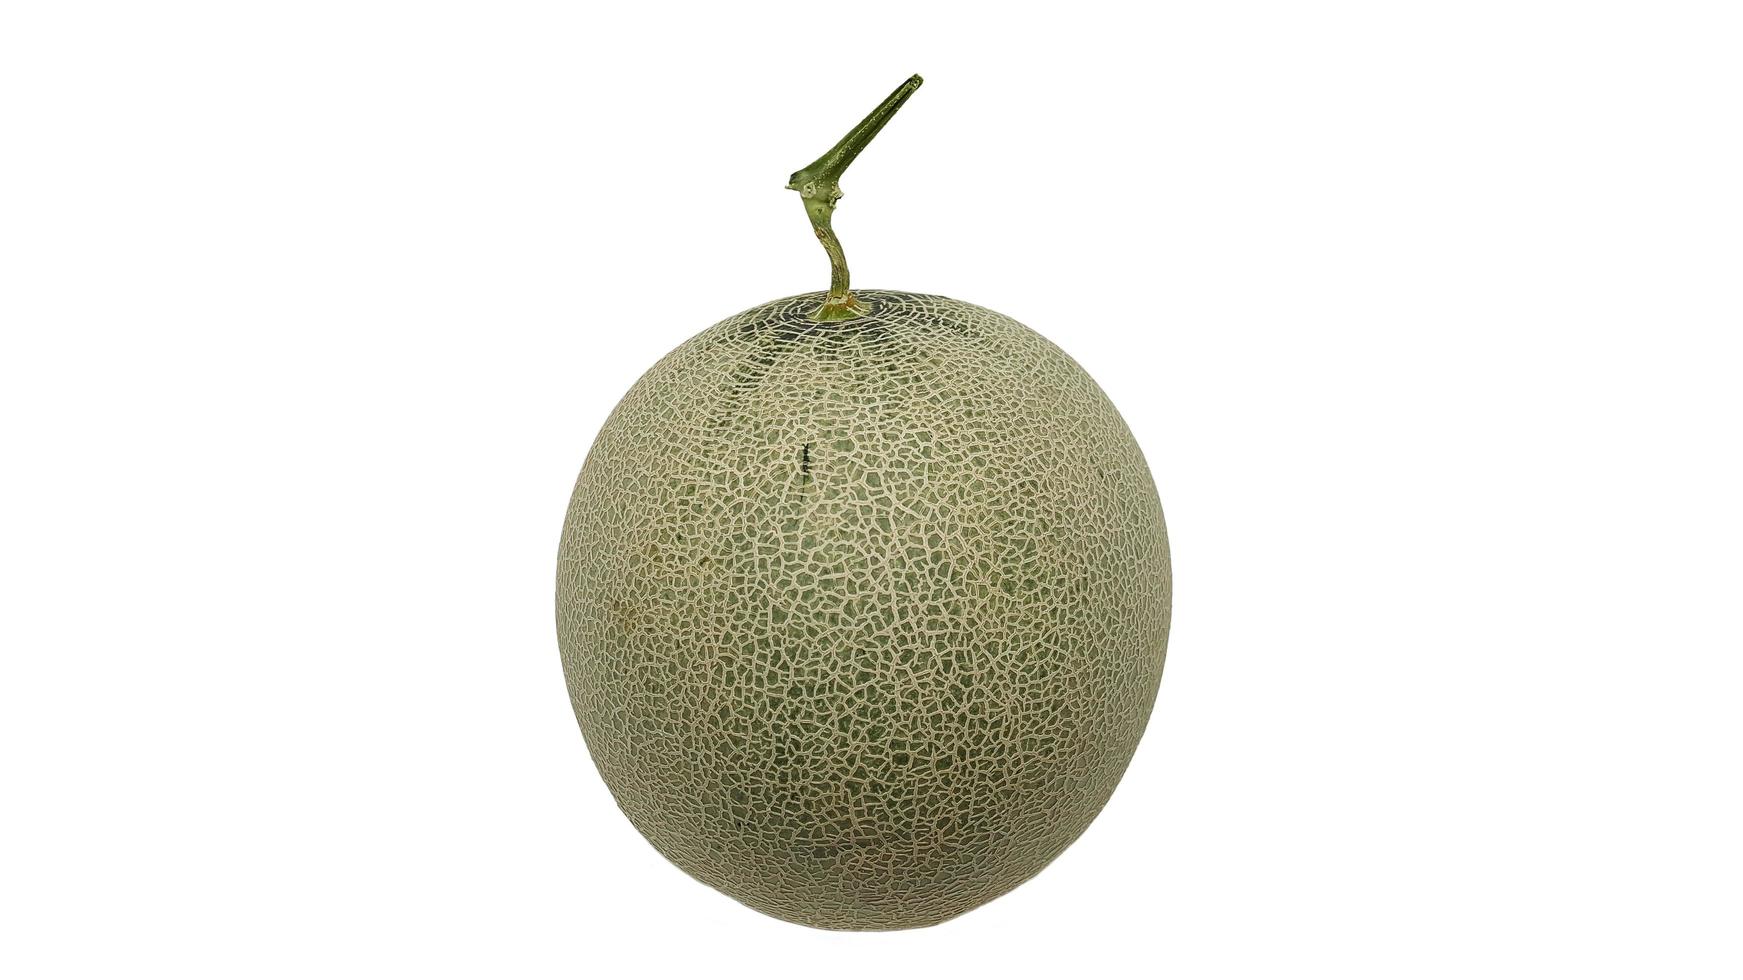 den gröna melonen isolerad på en vit bakgrund. foto